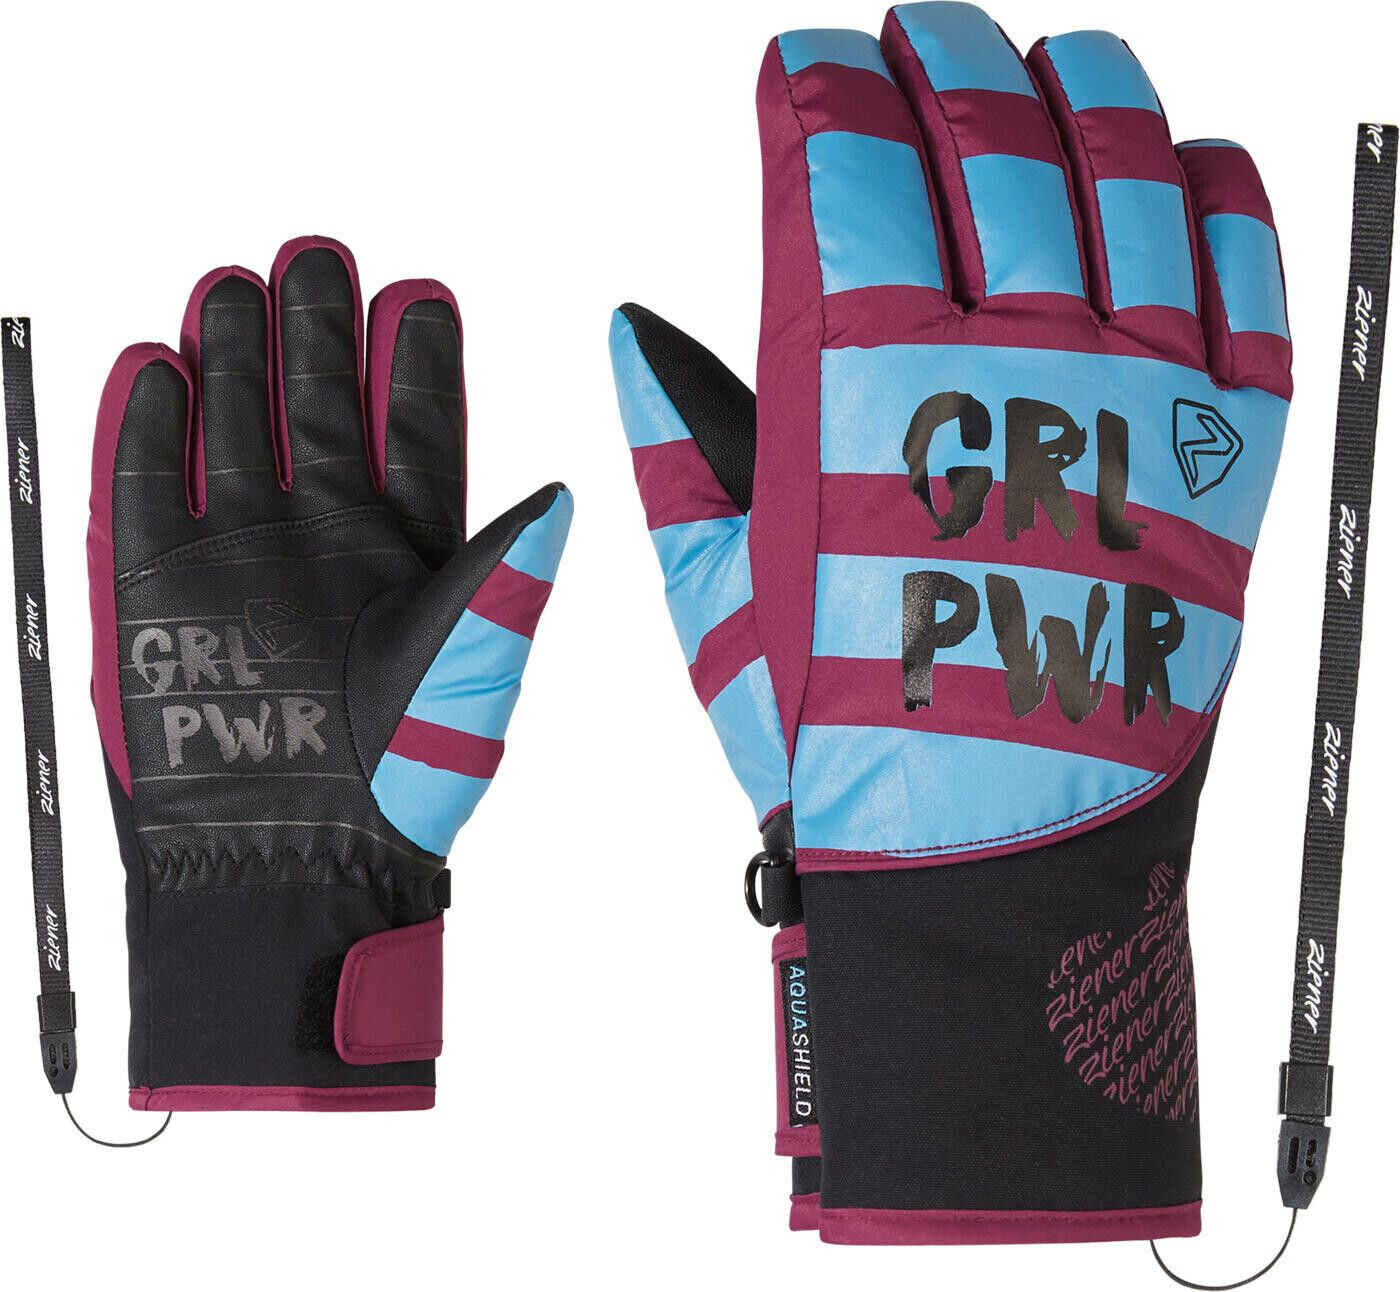 Glove Girls bei PR ASR 21,12 Liwa Ziener ab € Junior | Preisvergleich